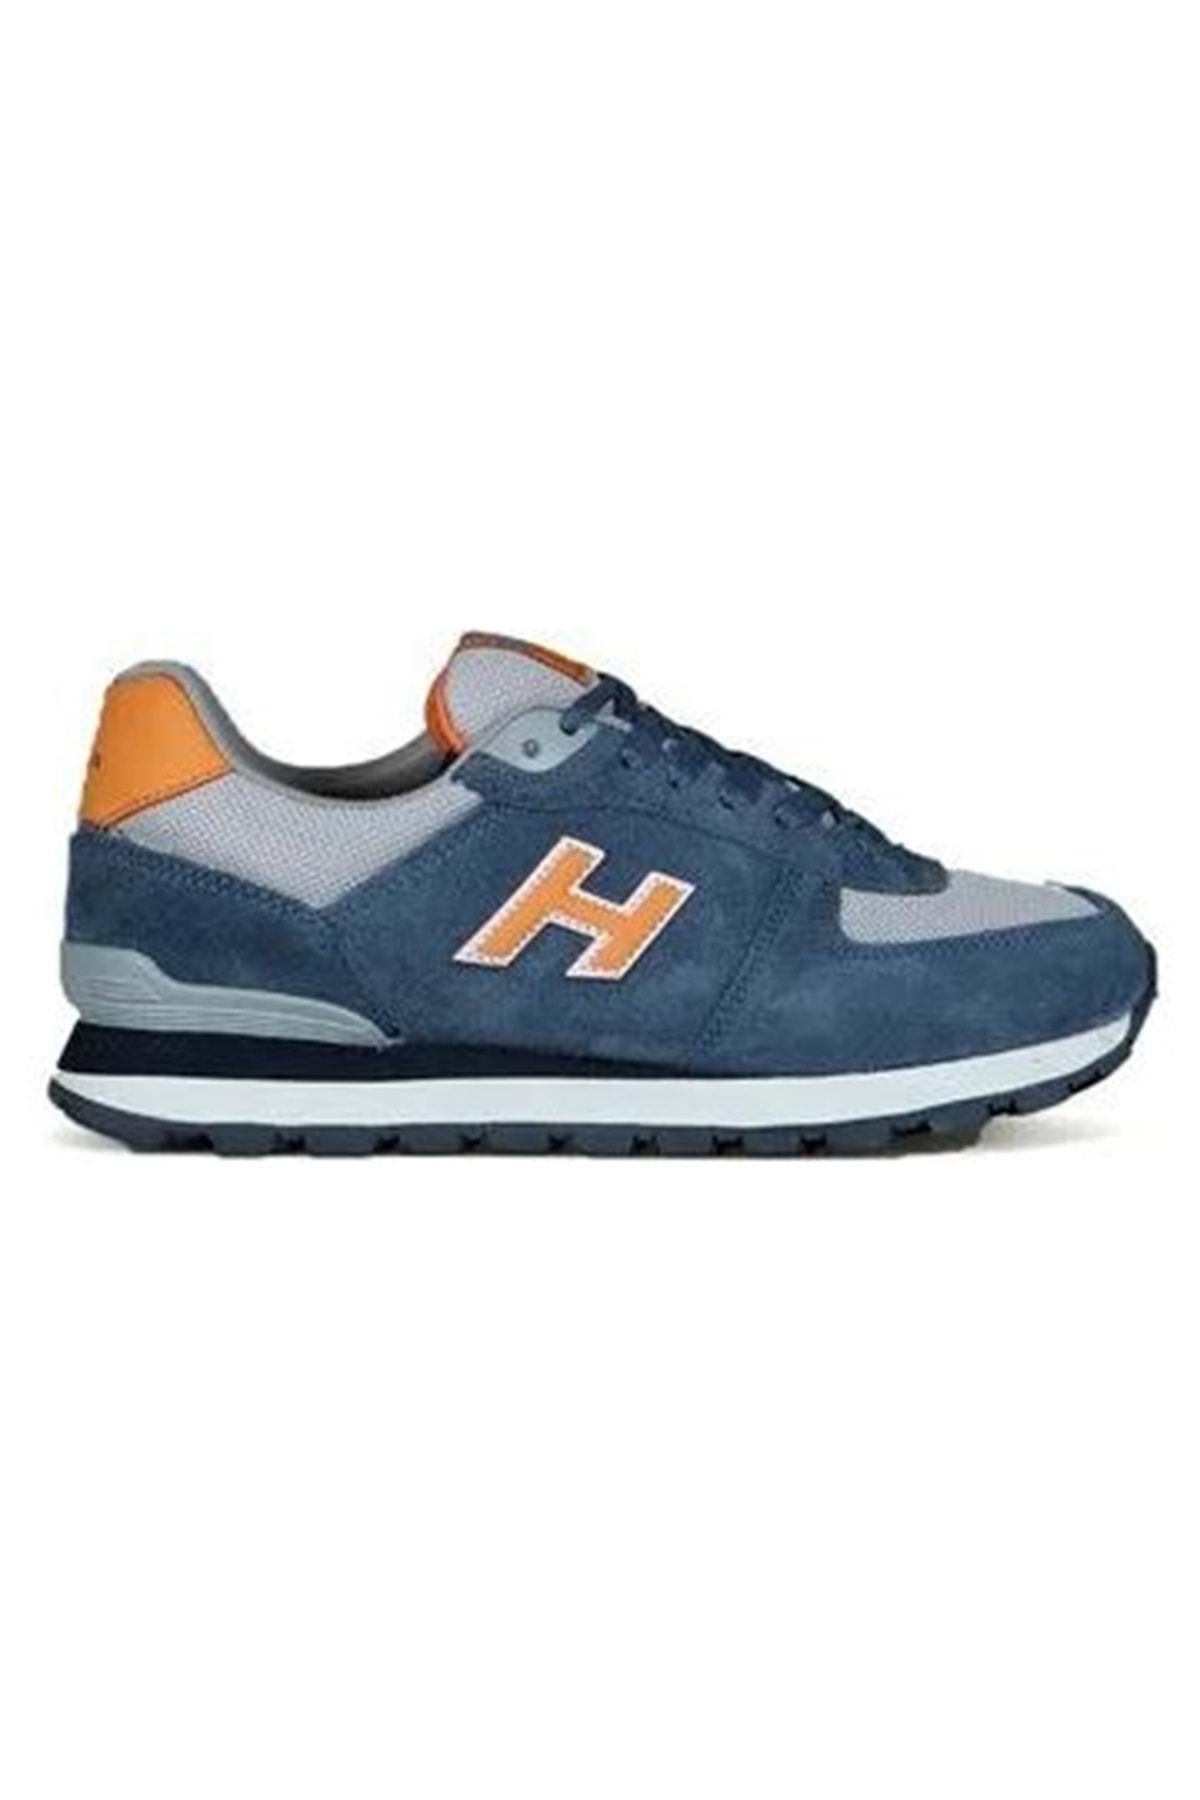 Hammer Jack 102 19250 Peru %100 Hakiki Deri Unisex Spor Ayakkabı Mavi-turuncu